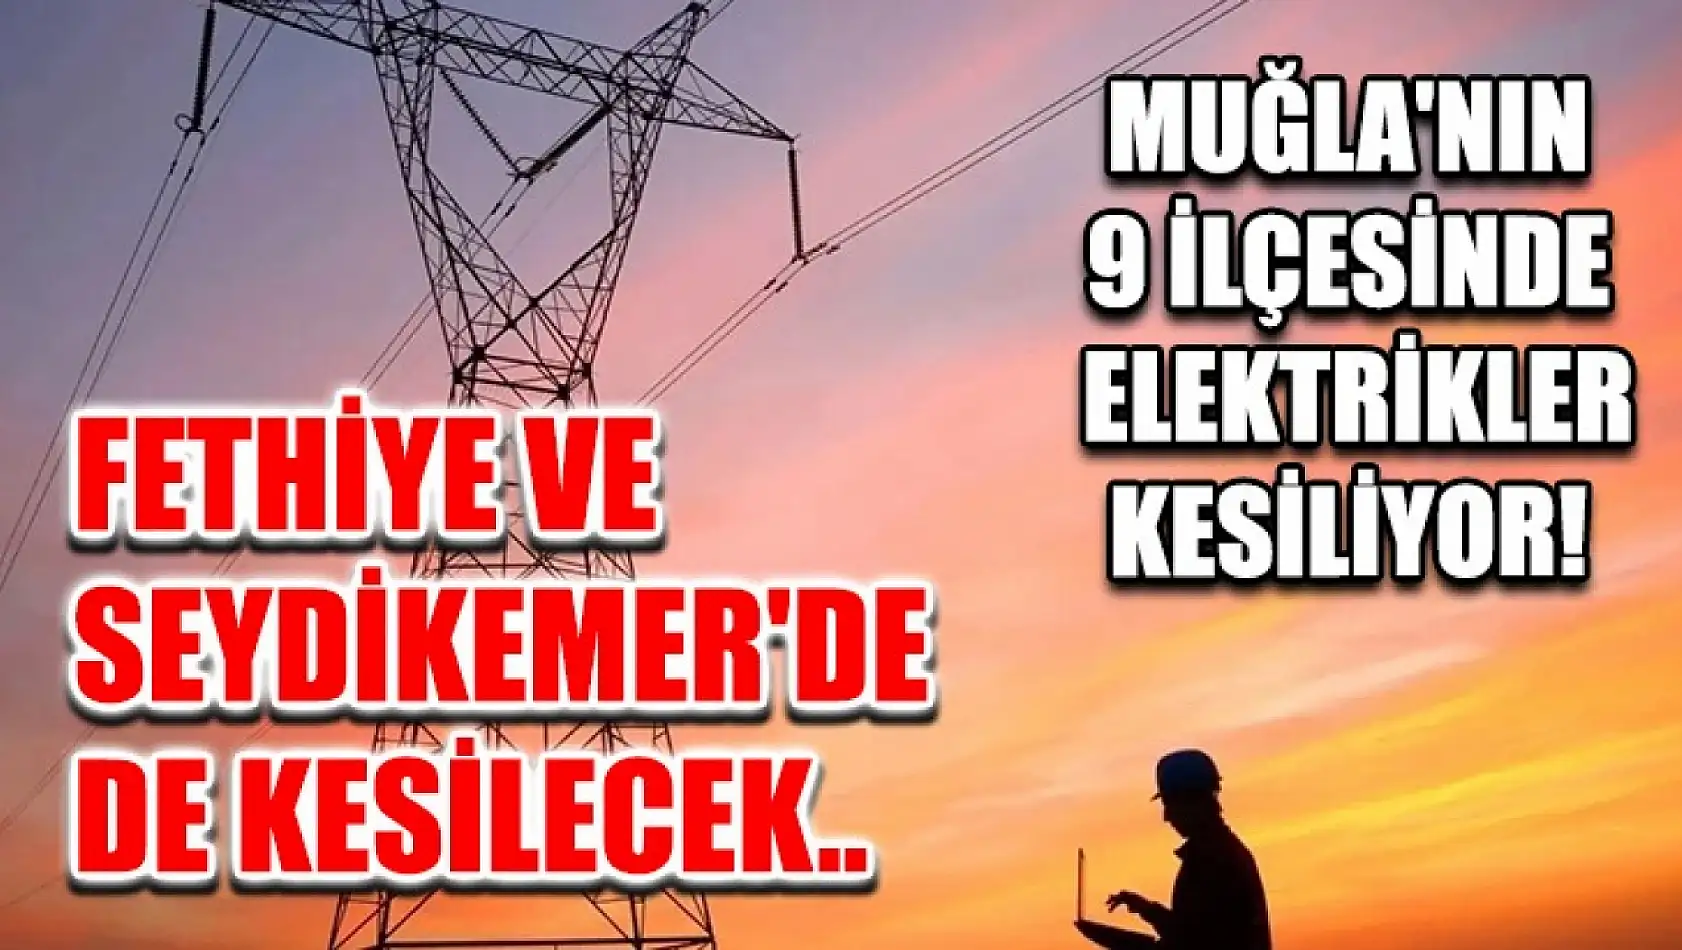 Muğla'nın 9 ilçesinde elektrikler kesiliyor! Fethiye ve Seydikemer'de de kesilecek..